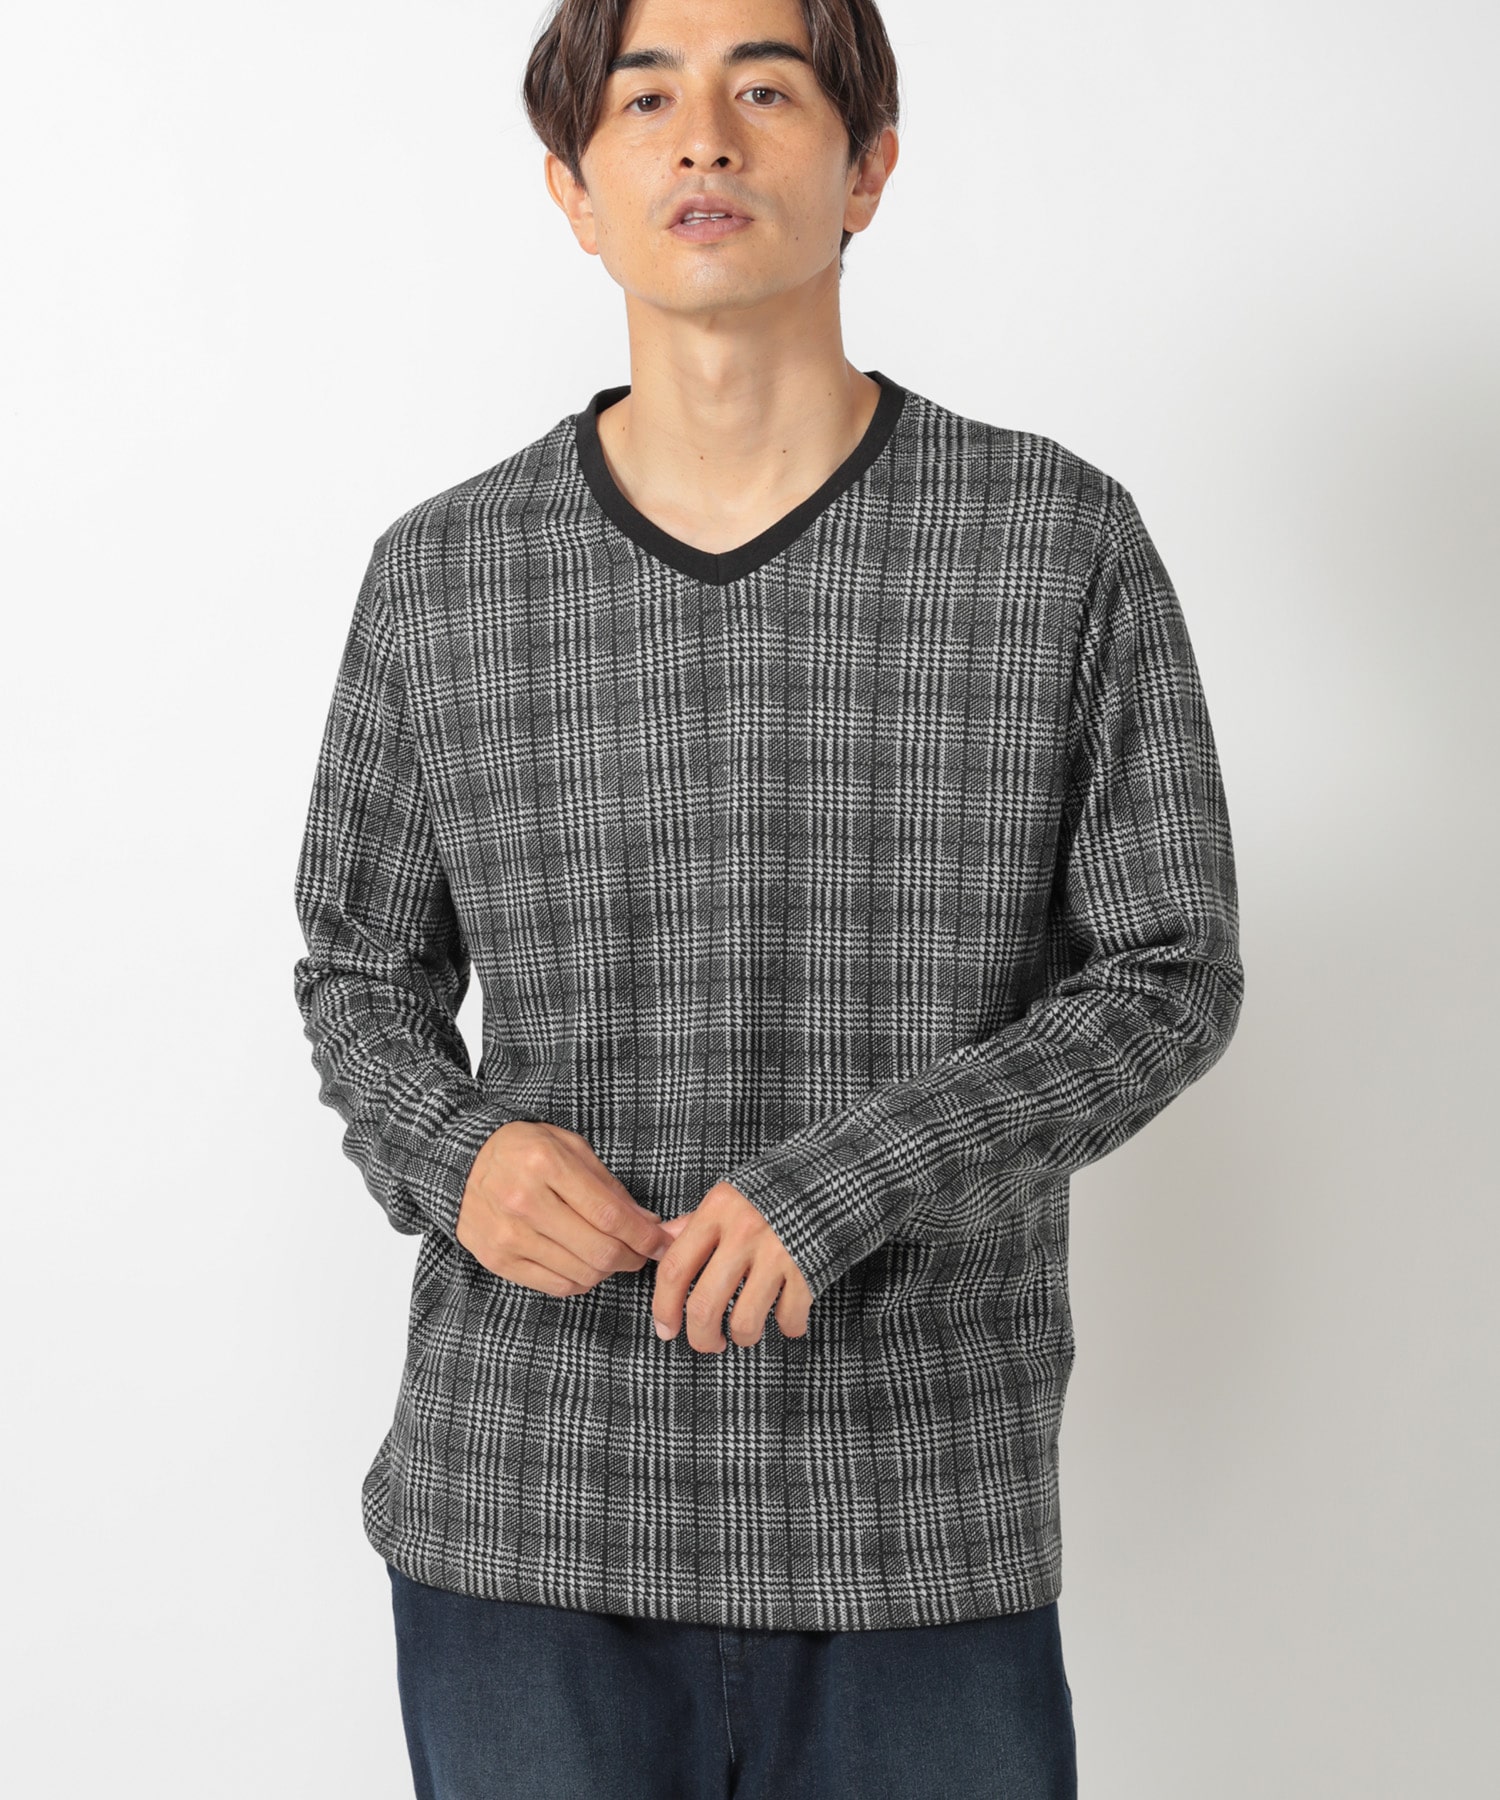 グレンチェックプリントtシャツ メンズファッション通販 Men S Bigi Online Store メンズビギ オンラインストア